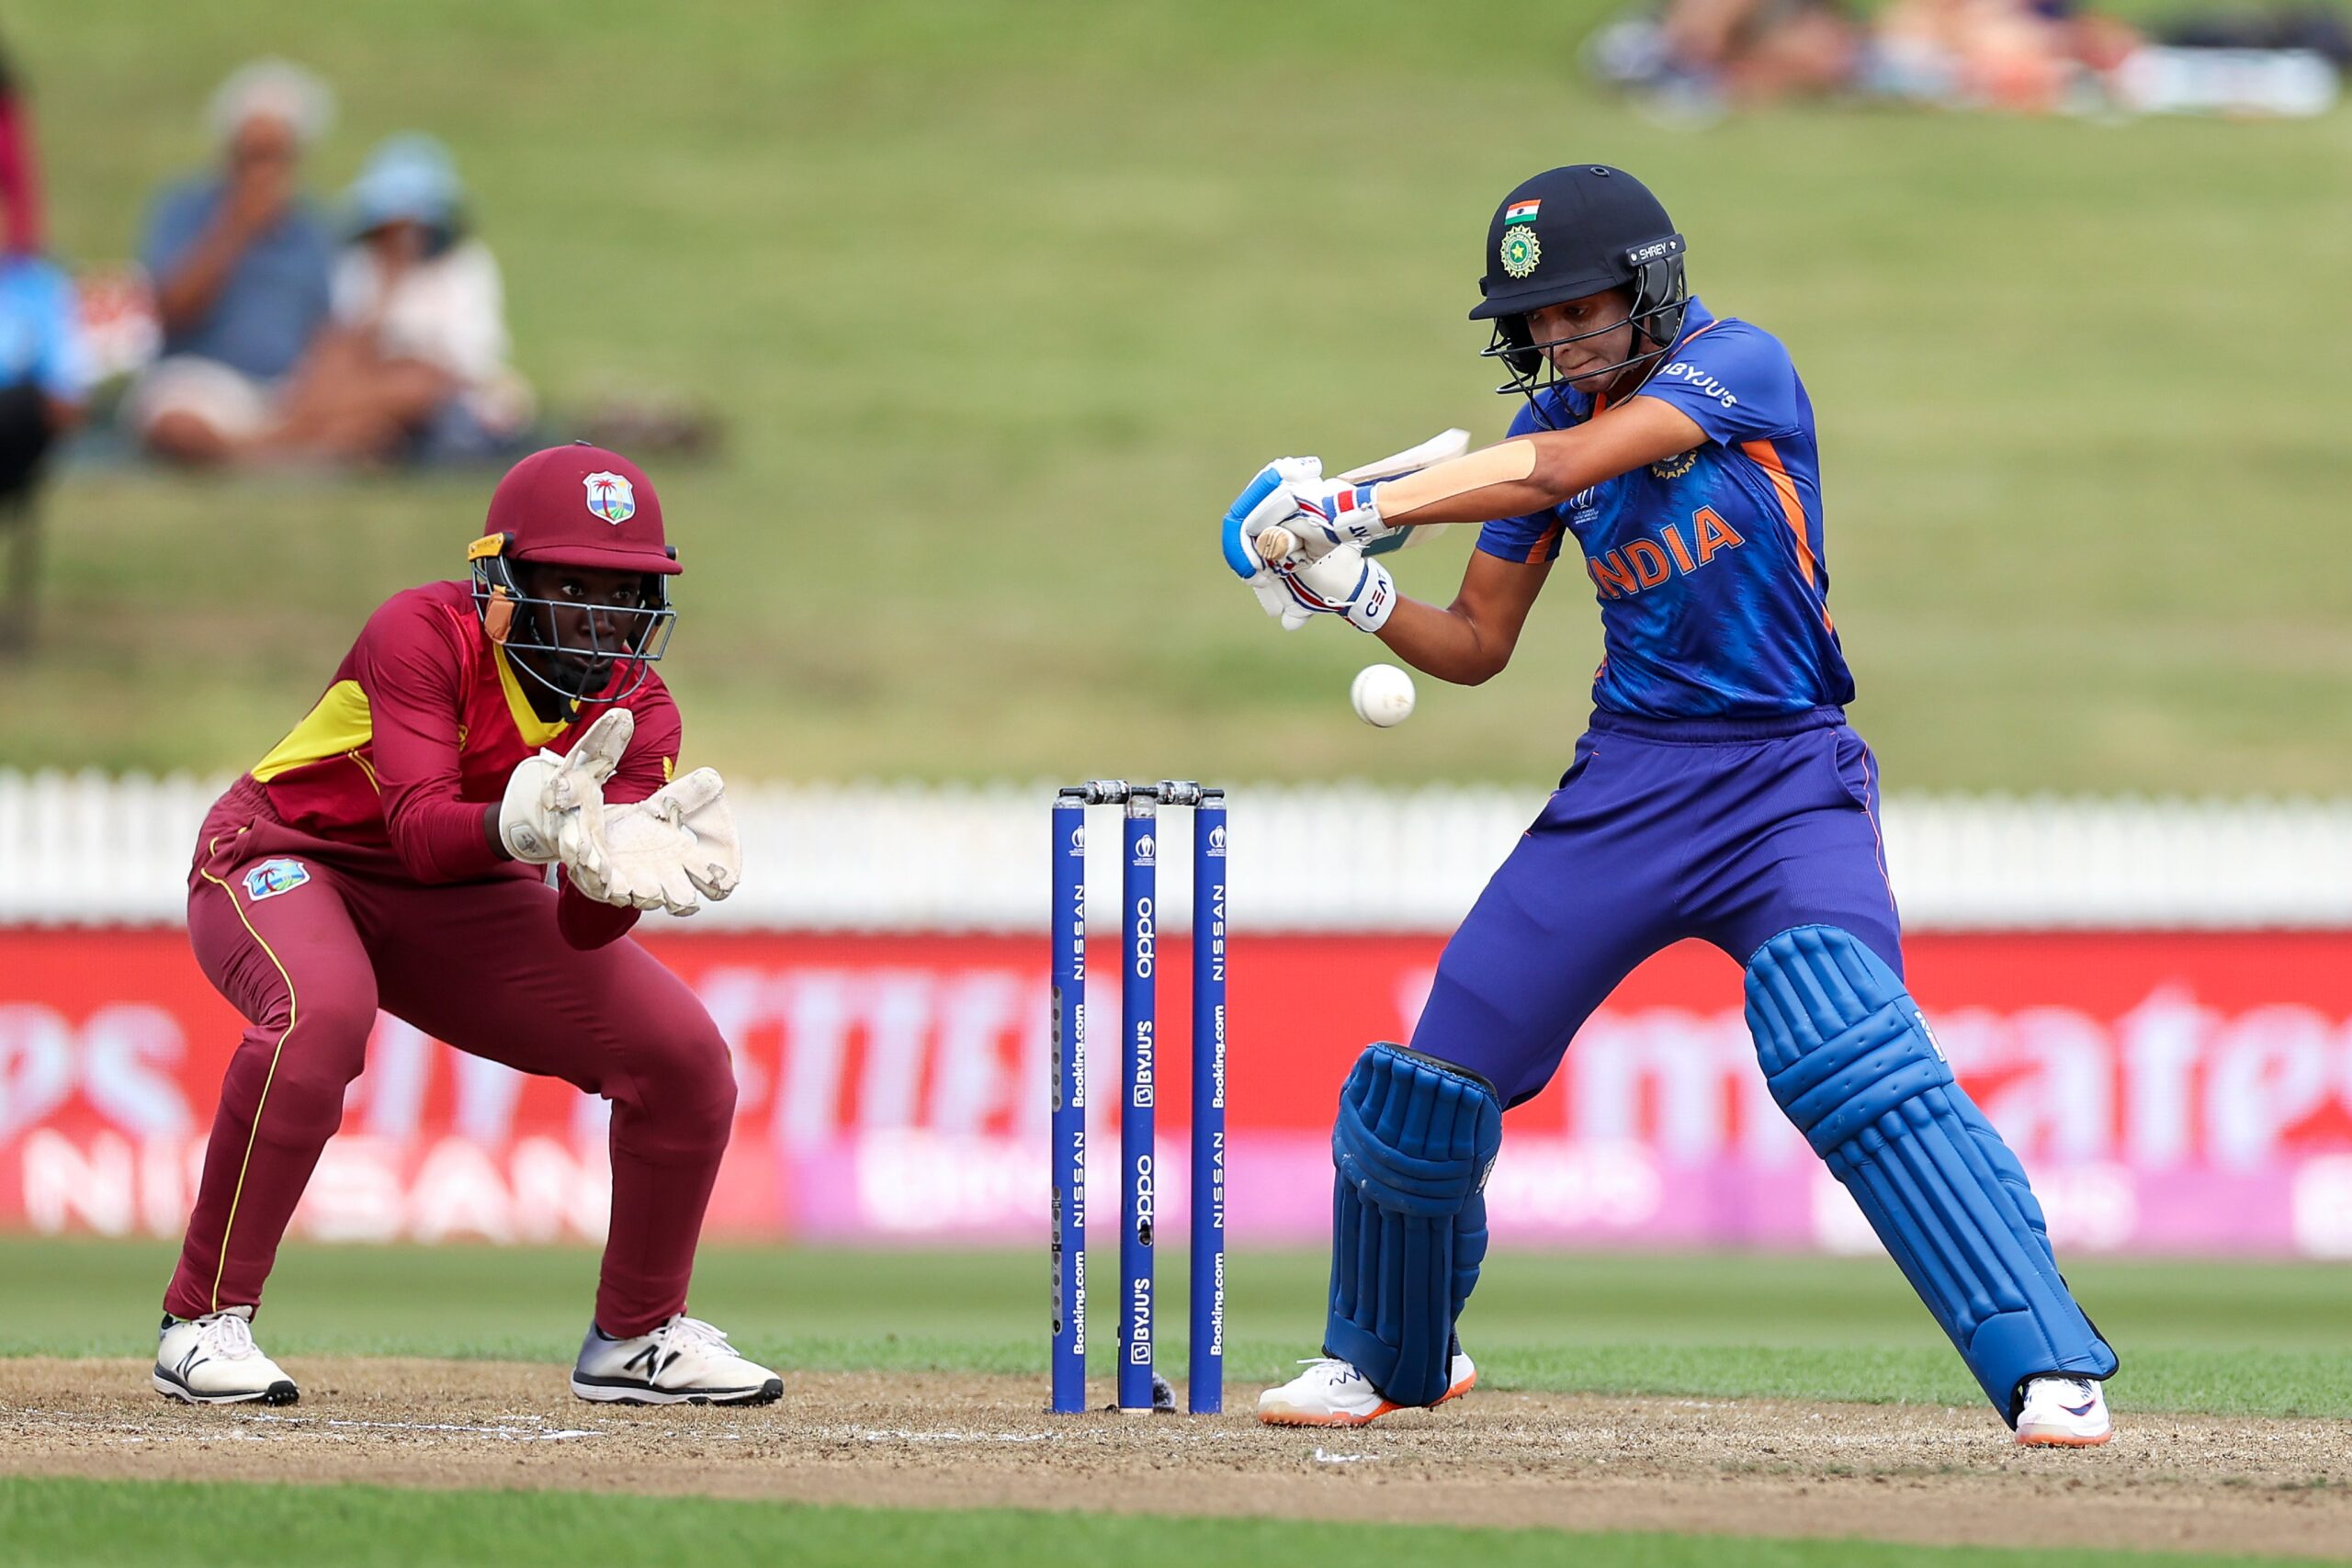 महिला विश्व कप- स्मृति मंधाना और हरमनप्रीत कौर के शतकों की मदद से वेस्टइंडीज के खिलाफ भारत का विशाल स्कोर 2